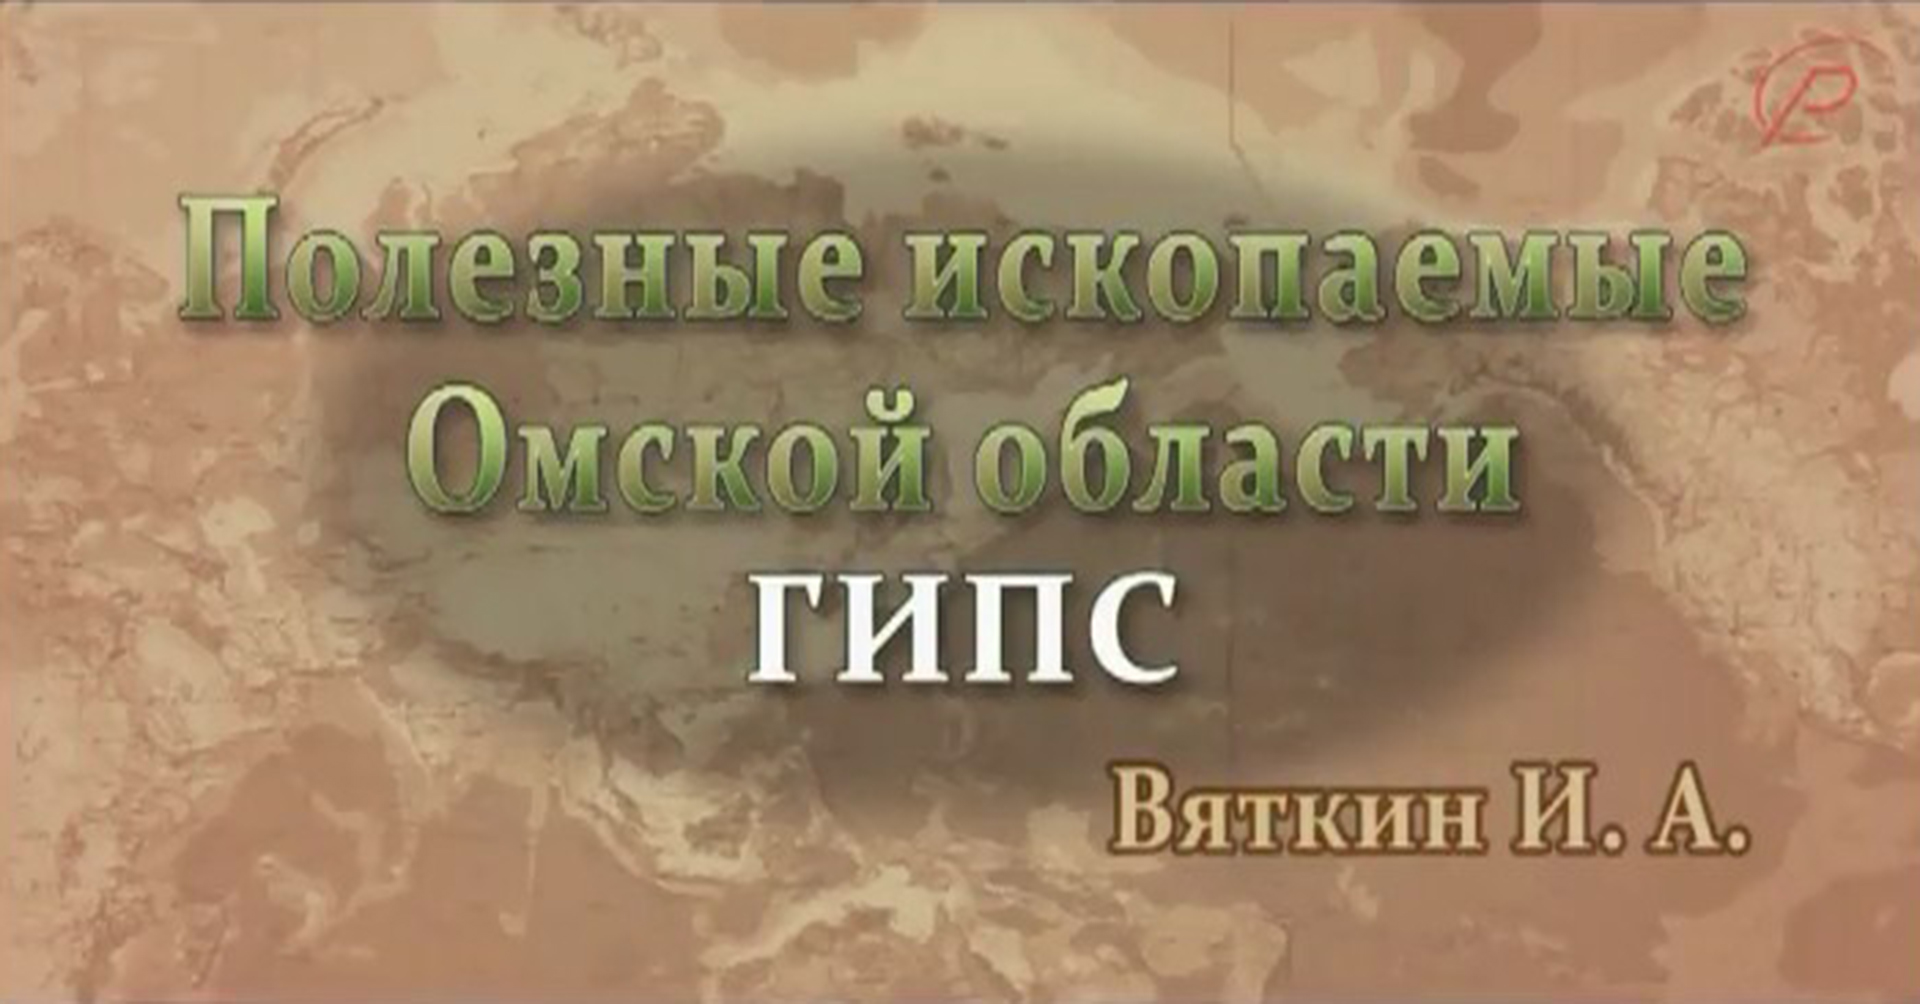 Полезные ископаемые Омской области - гипс